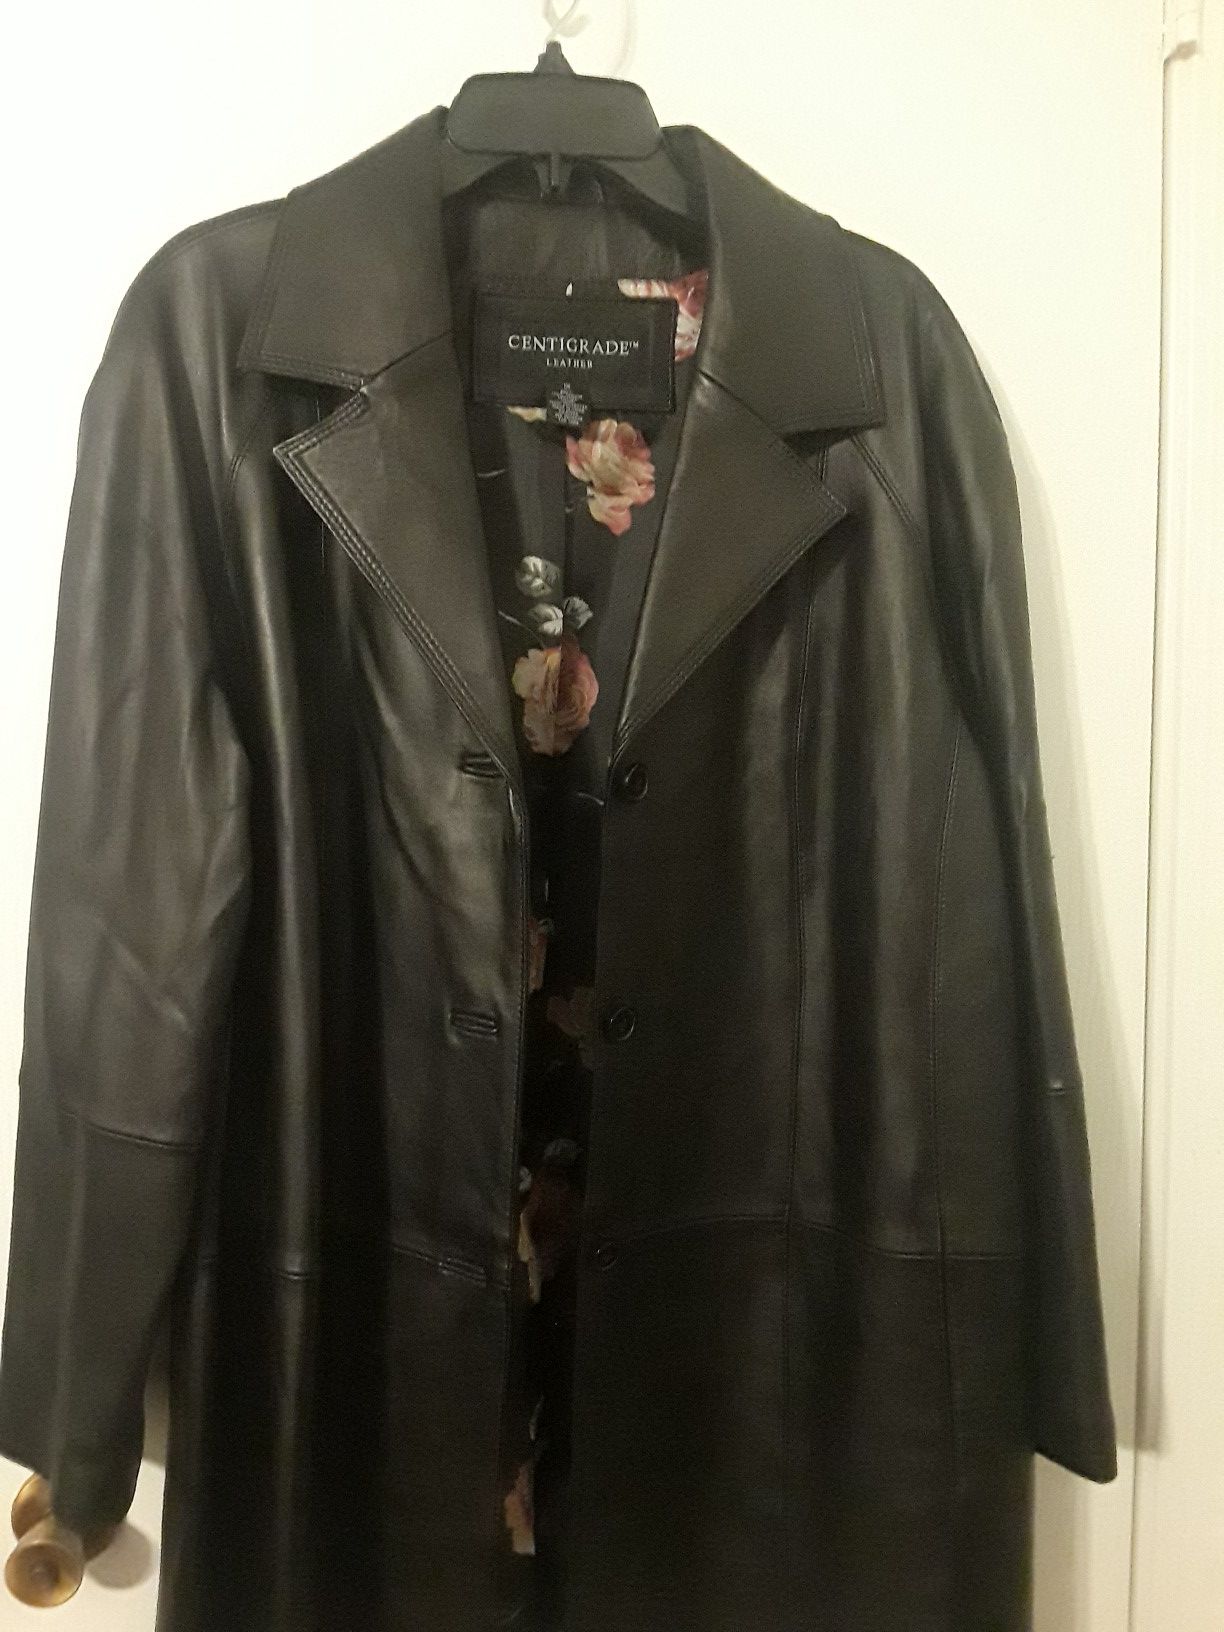 Leather knee length jacket,coat.